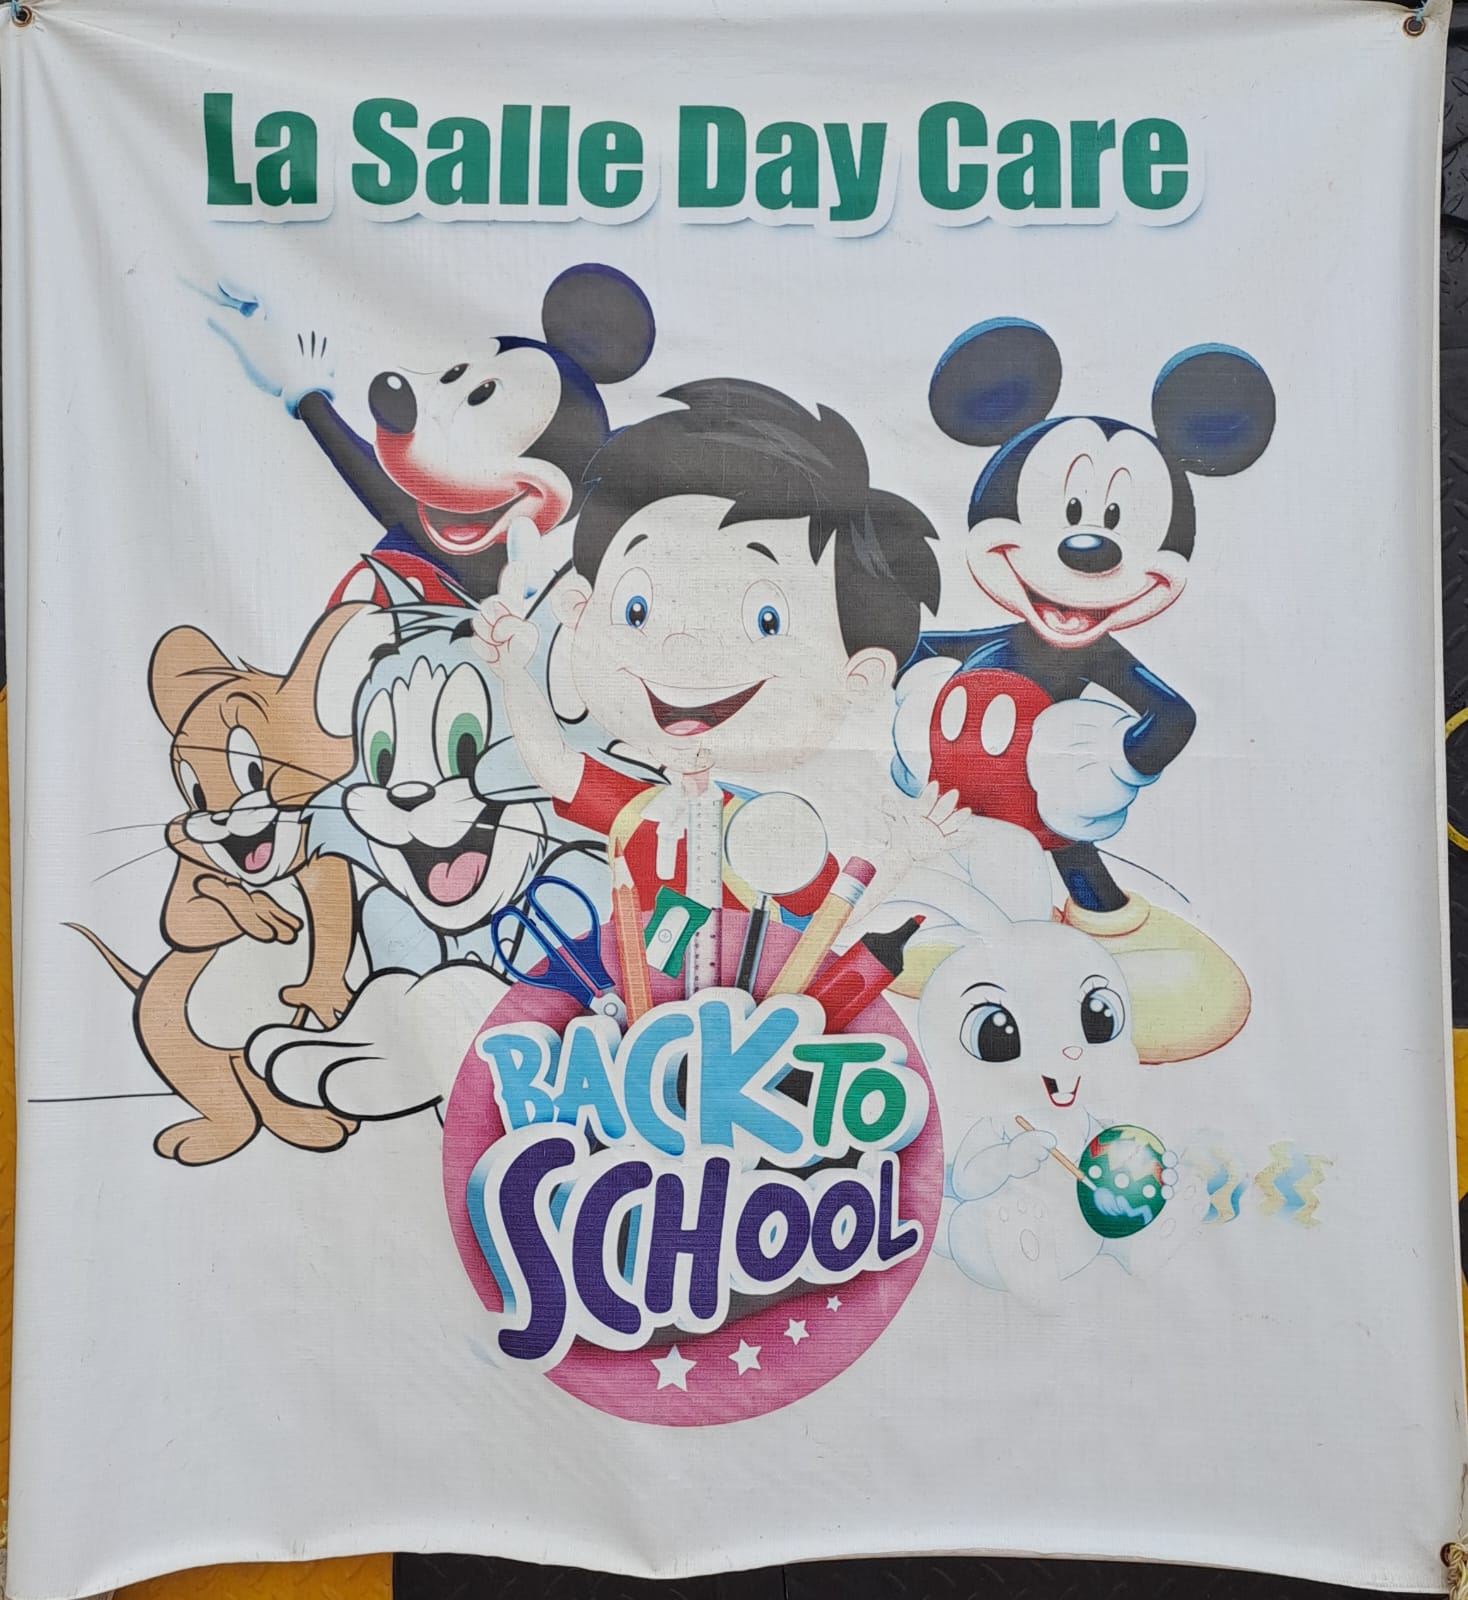 La Salle Day Care ðððð